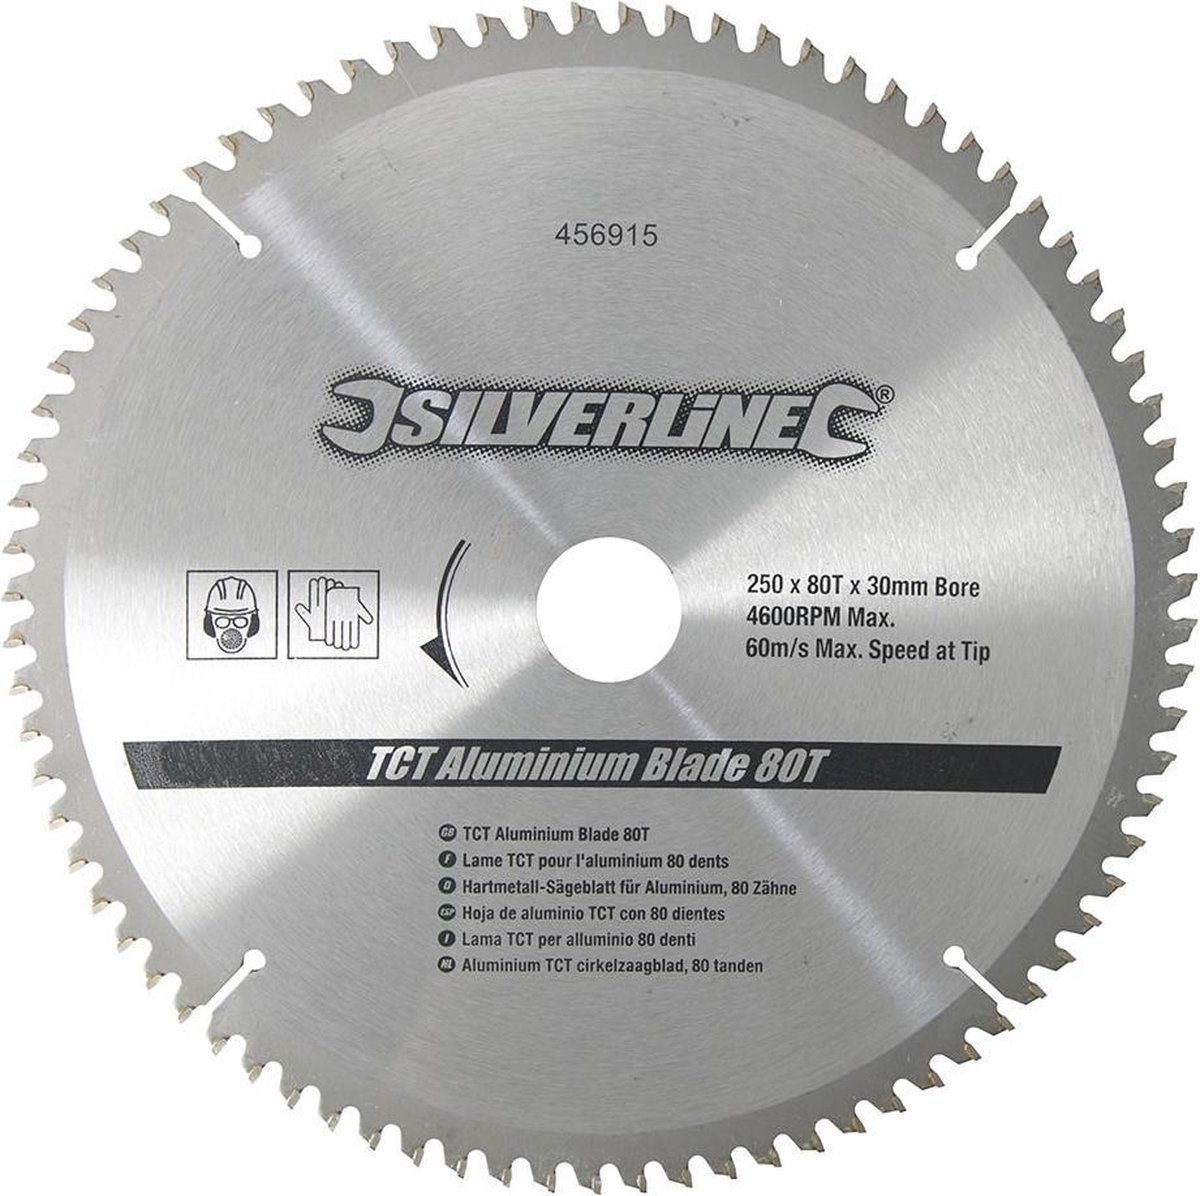 Silverline Aluminium TCT cirkelzaagblad, 80 tanden 250 x 30 - 25, 20 en 16  mm ringen | bol.com